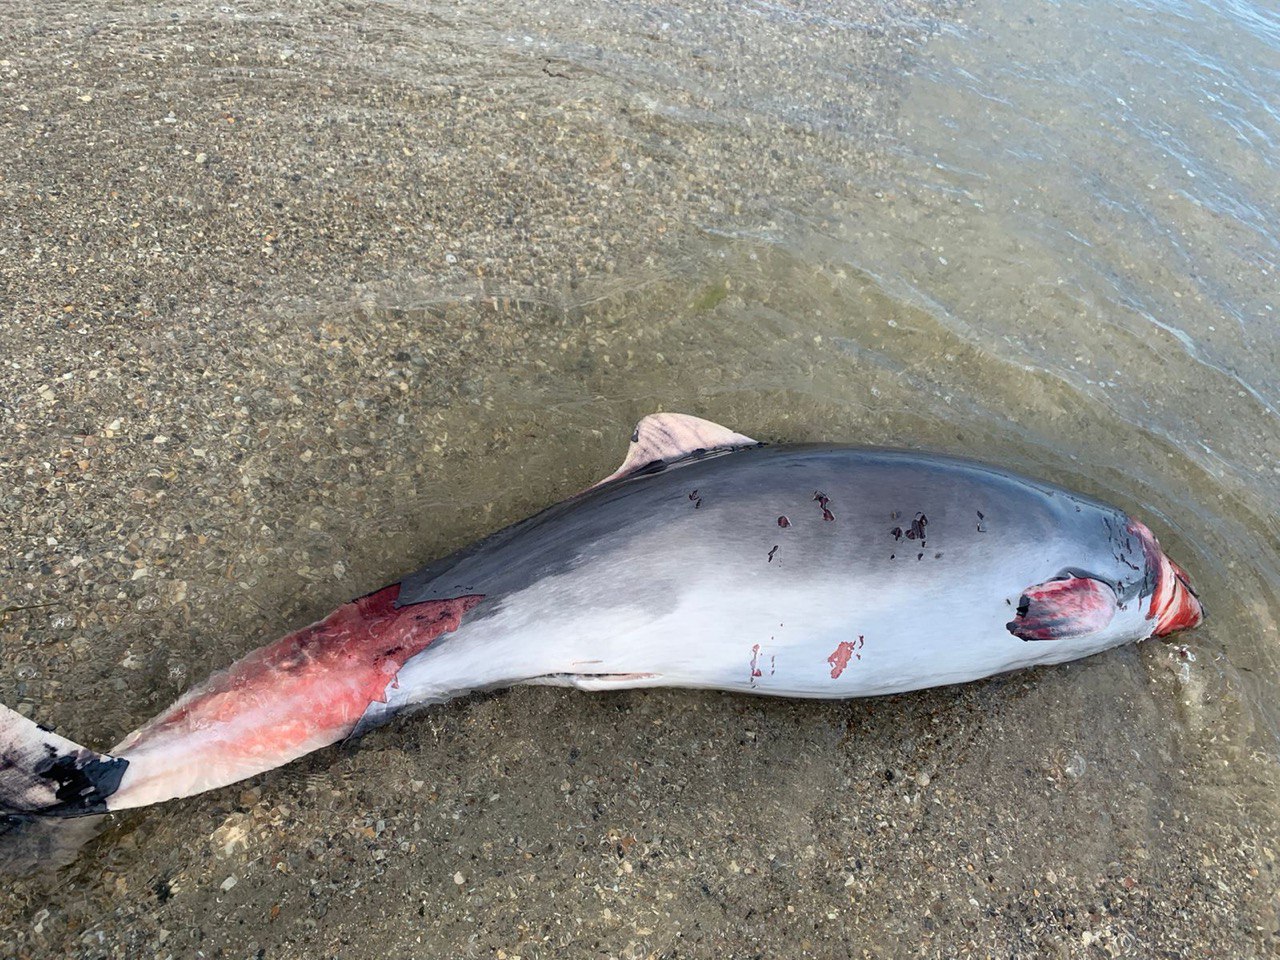 В Приморском на берег выбросило трех мертвых дельфинов. Кто убивает животных: оккупанты или браконьеры?